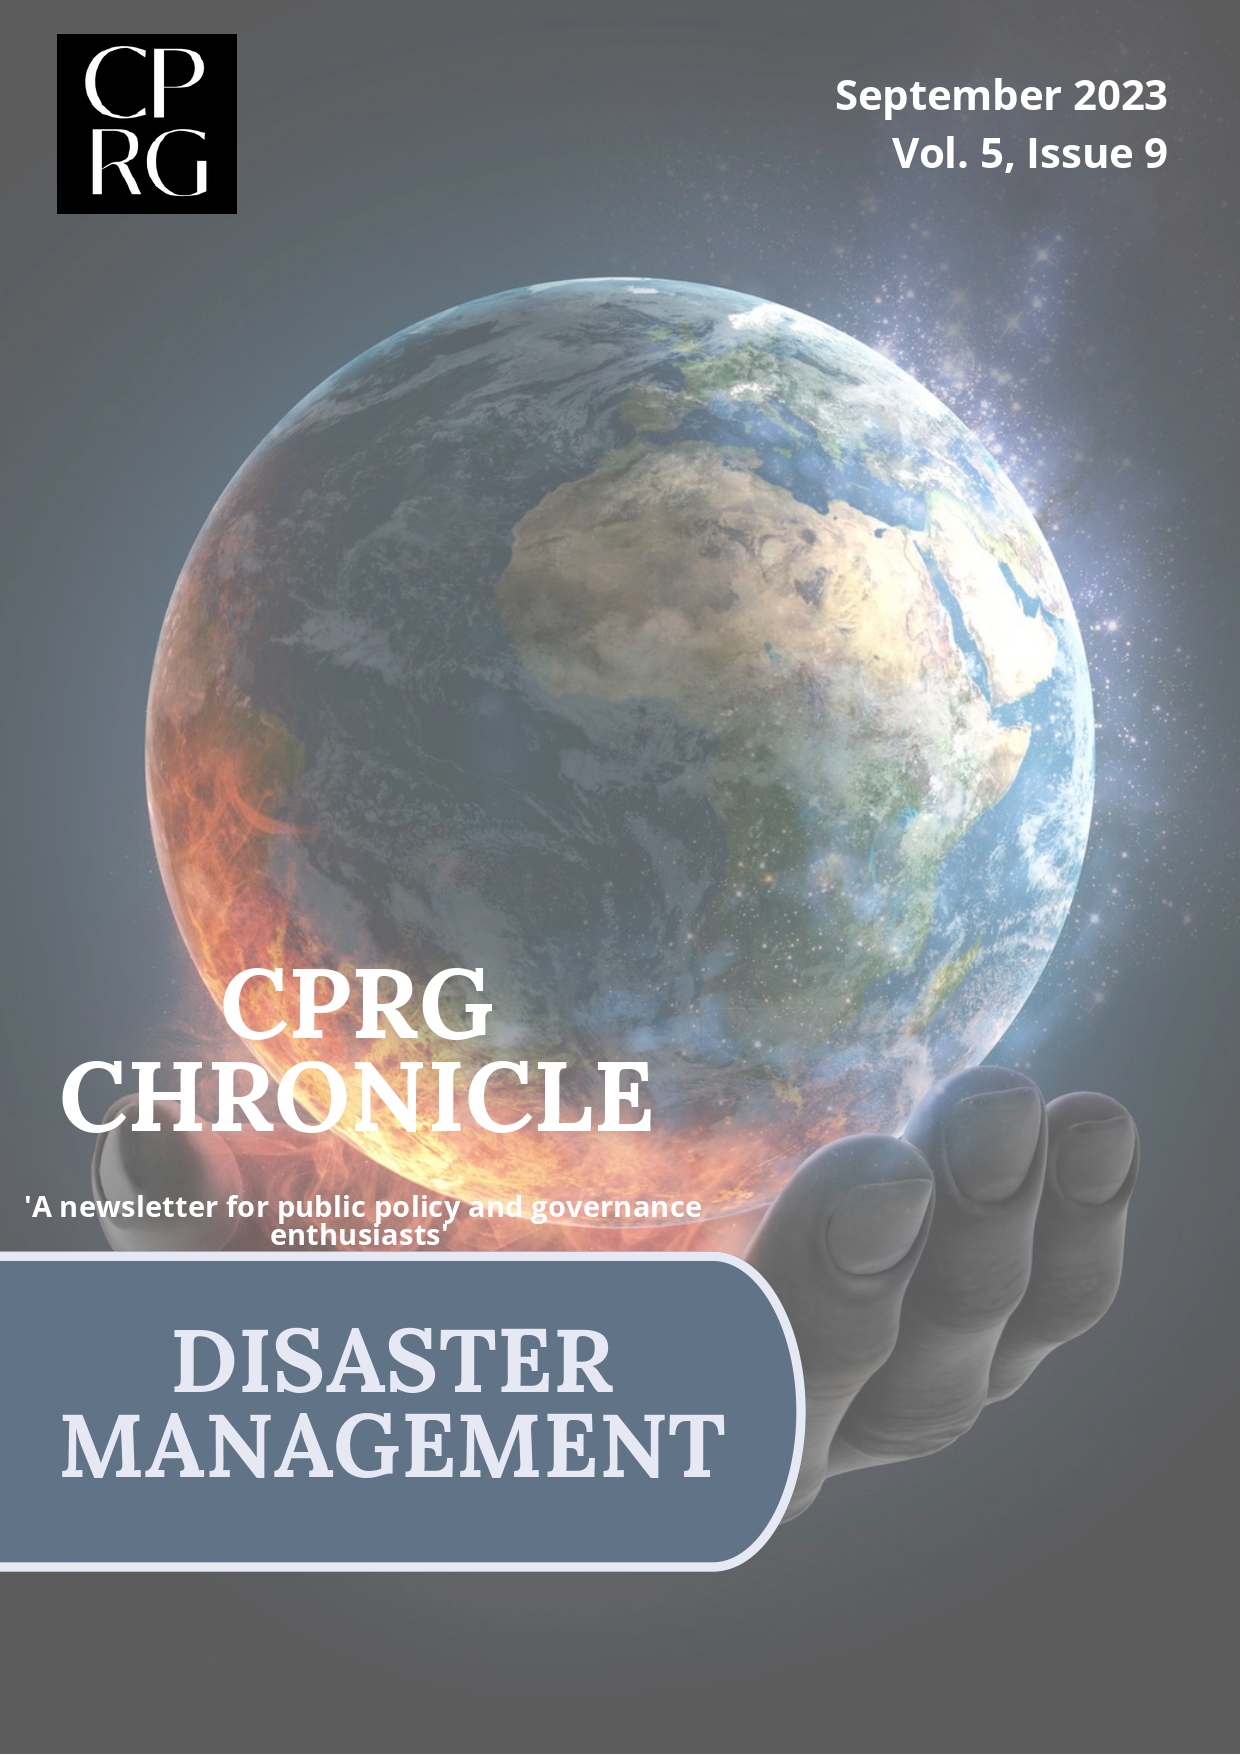 Disaster-Management-Newsletter-20-september2023-pic